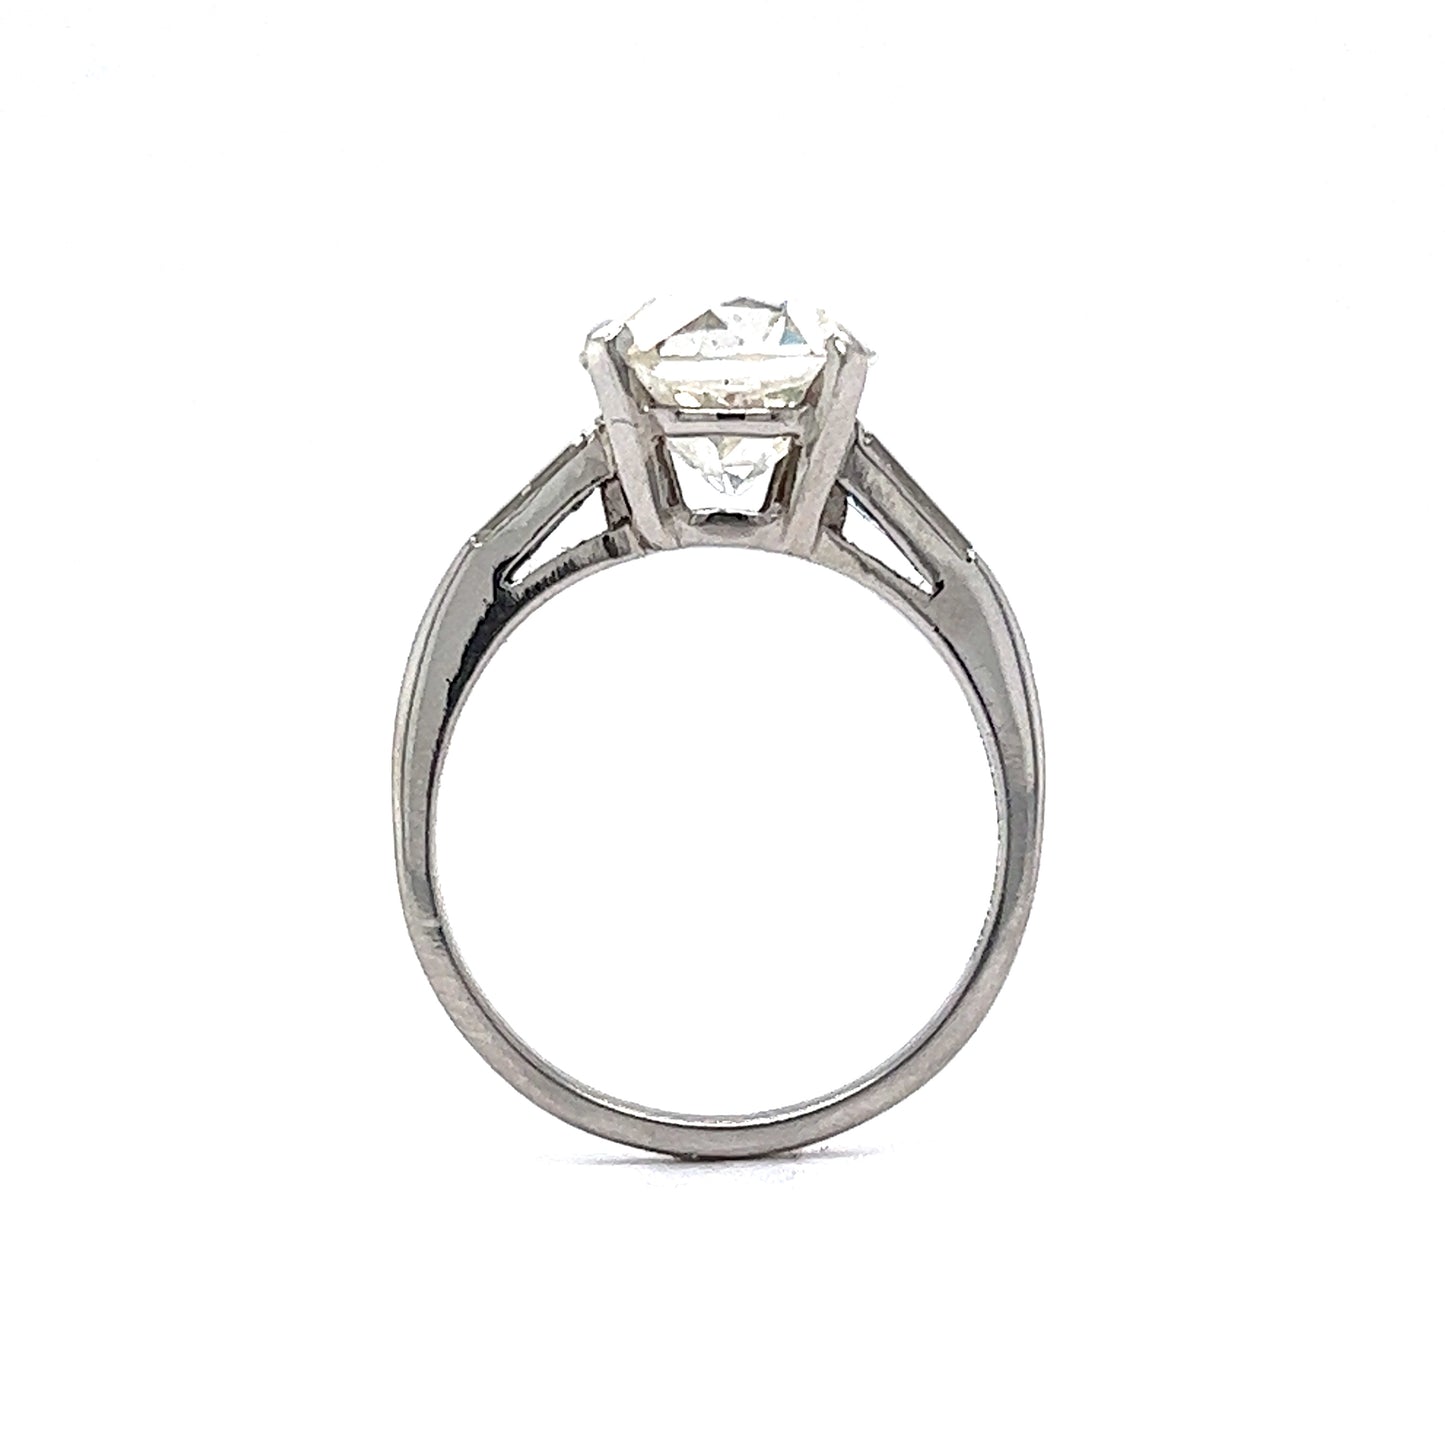 3 Carat Old European Diamond Engagement Ring in Platinum